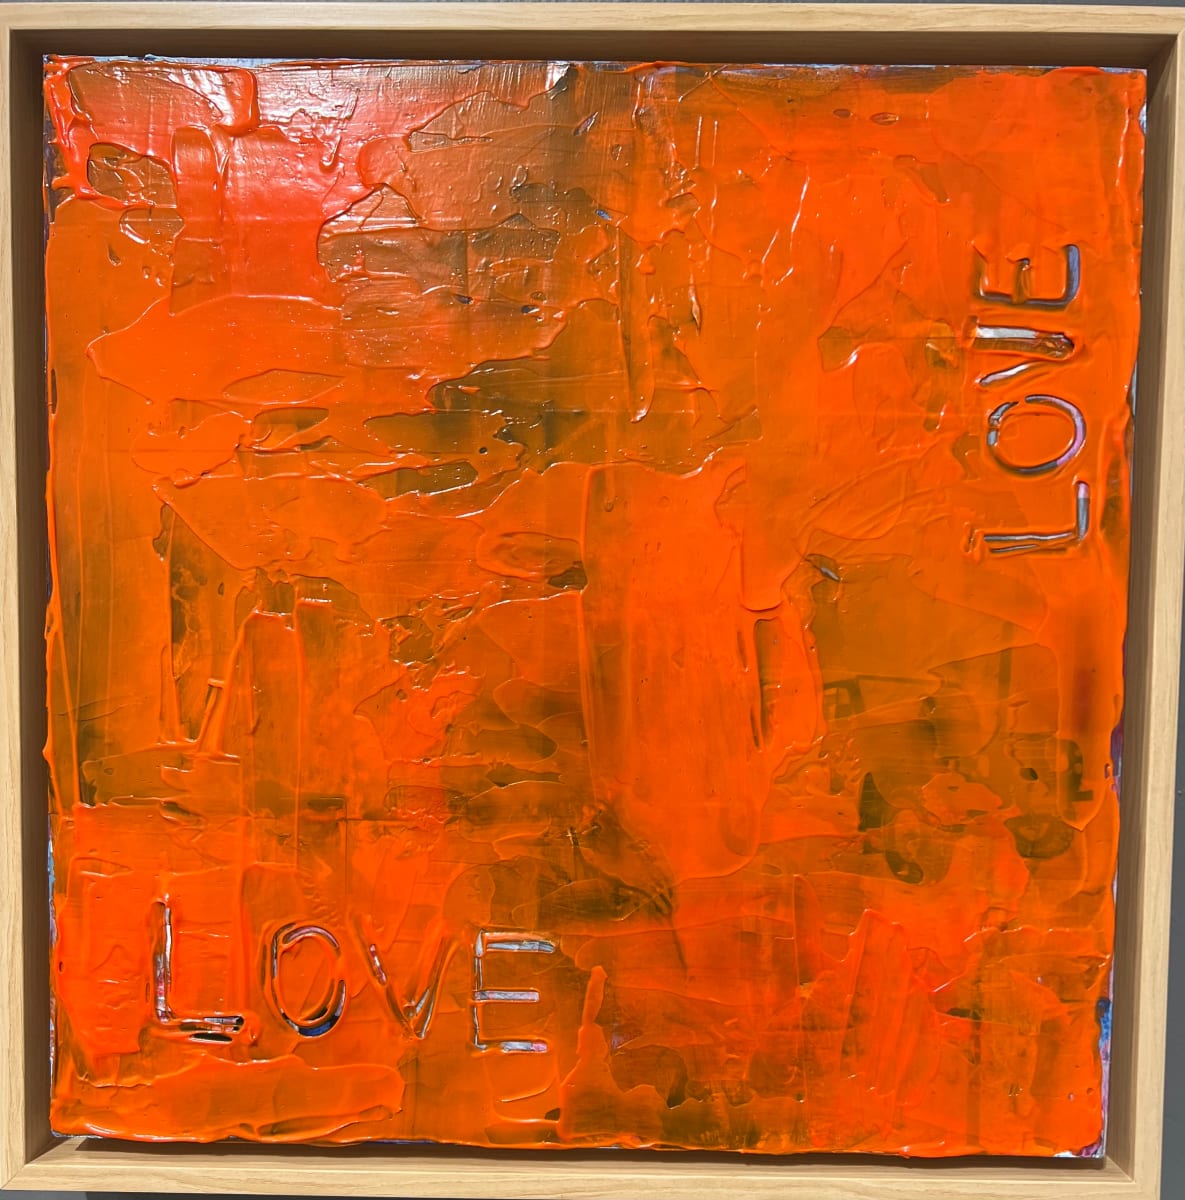 Lost in Love by Tina Kleinjan Setzer 